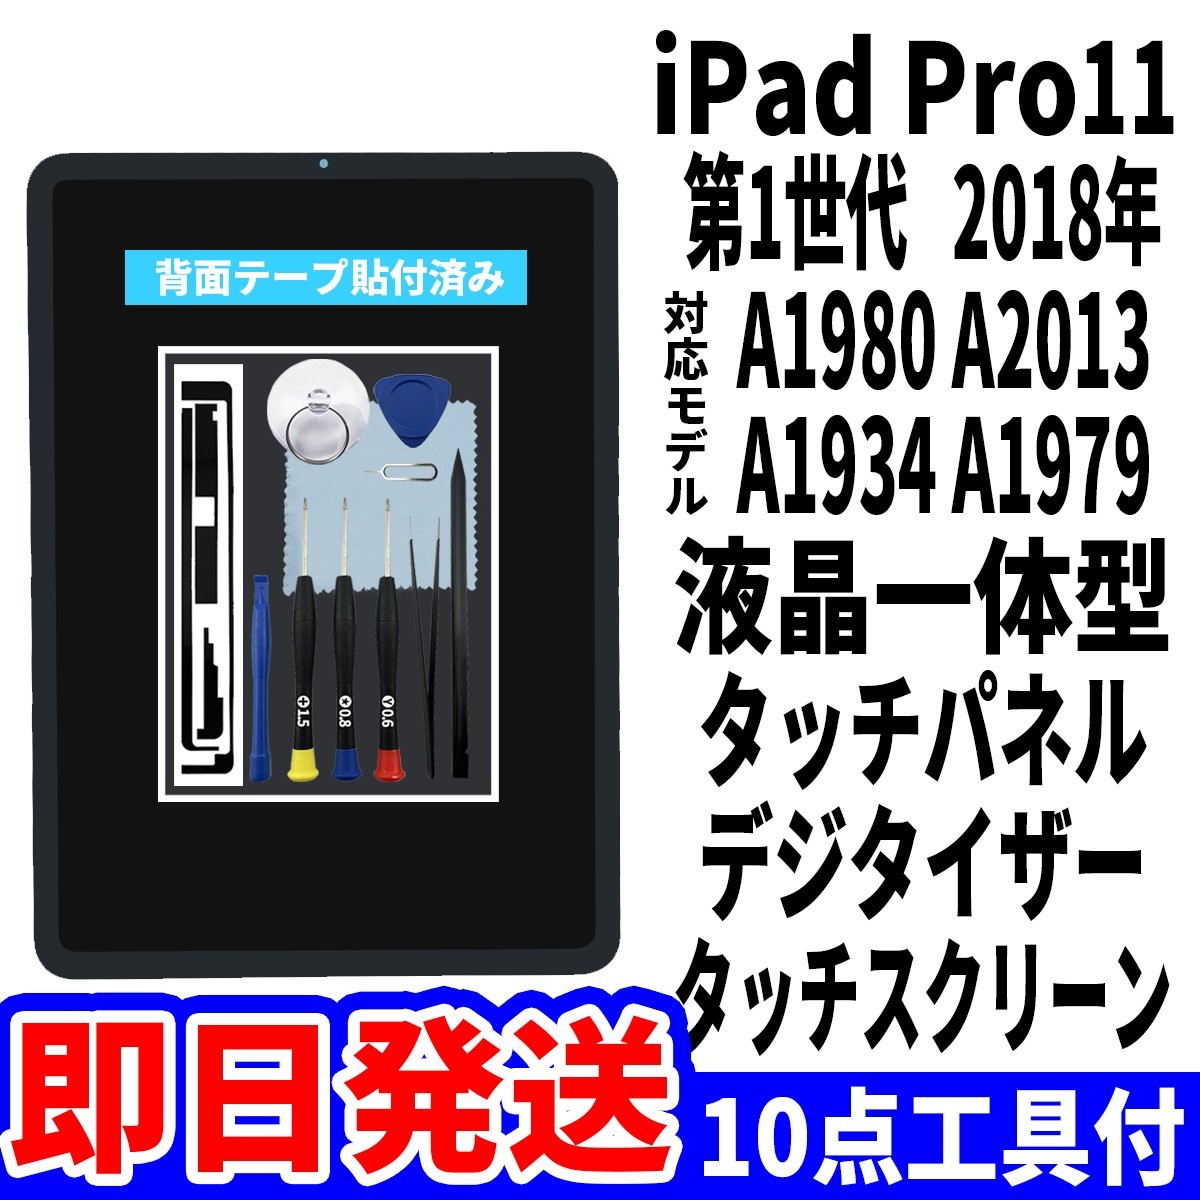 即日発送! iPad Pro11 第1世代 液晶 一体型 A1980 A2013 A1934 A1979 フロントパネル タッチスクリーン交換 デジタイザ修理 画面 工具付